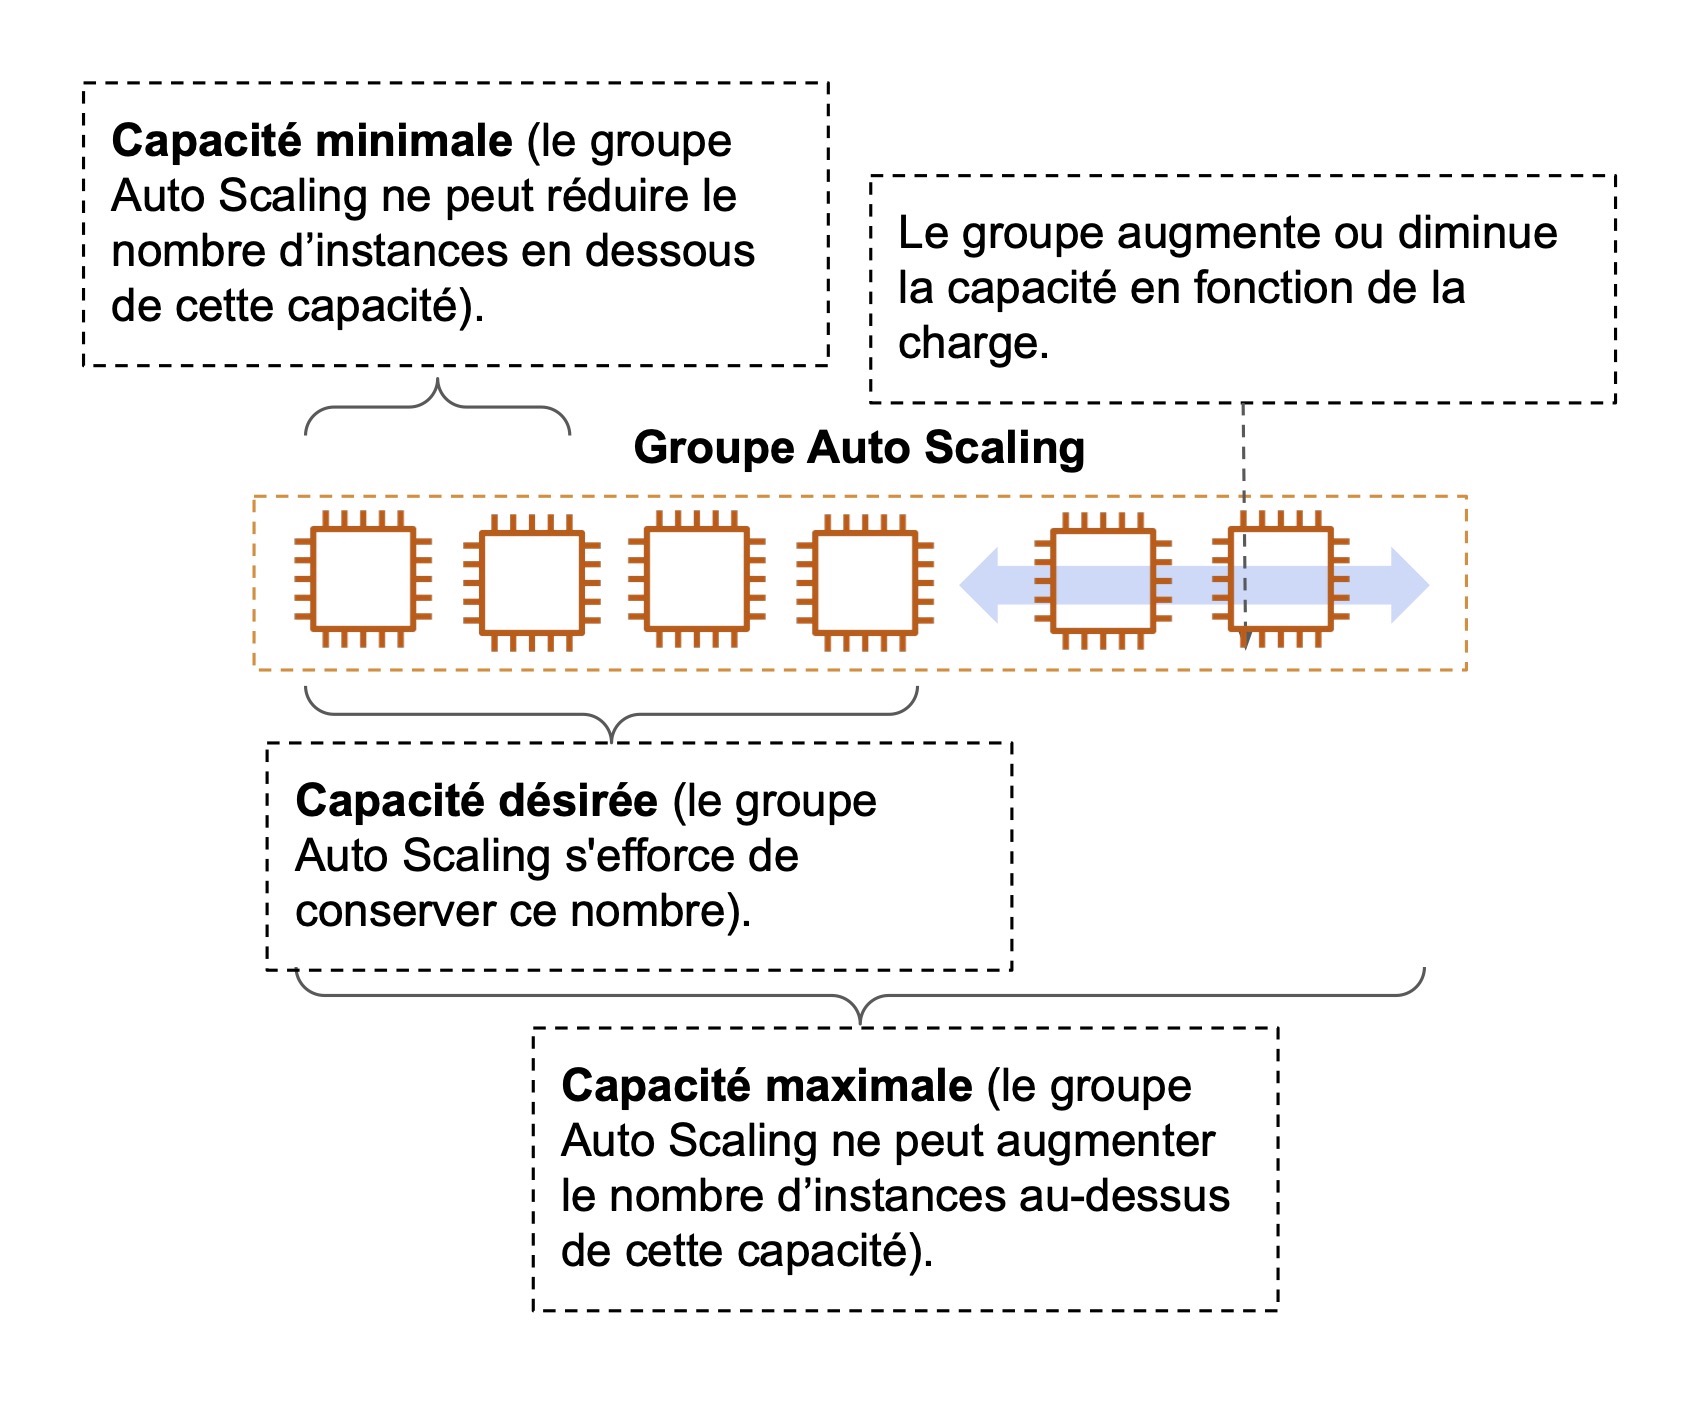 Illustration des capacités d'un groupe Auto Scalling : - minimale : contient 2 instances - désirée : contient 4 instances  - maximale : contient 6 instances